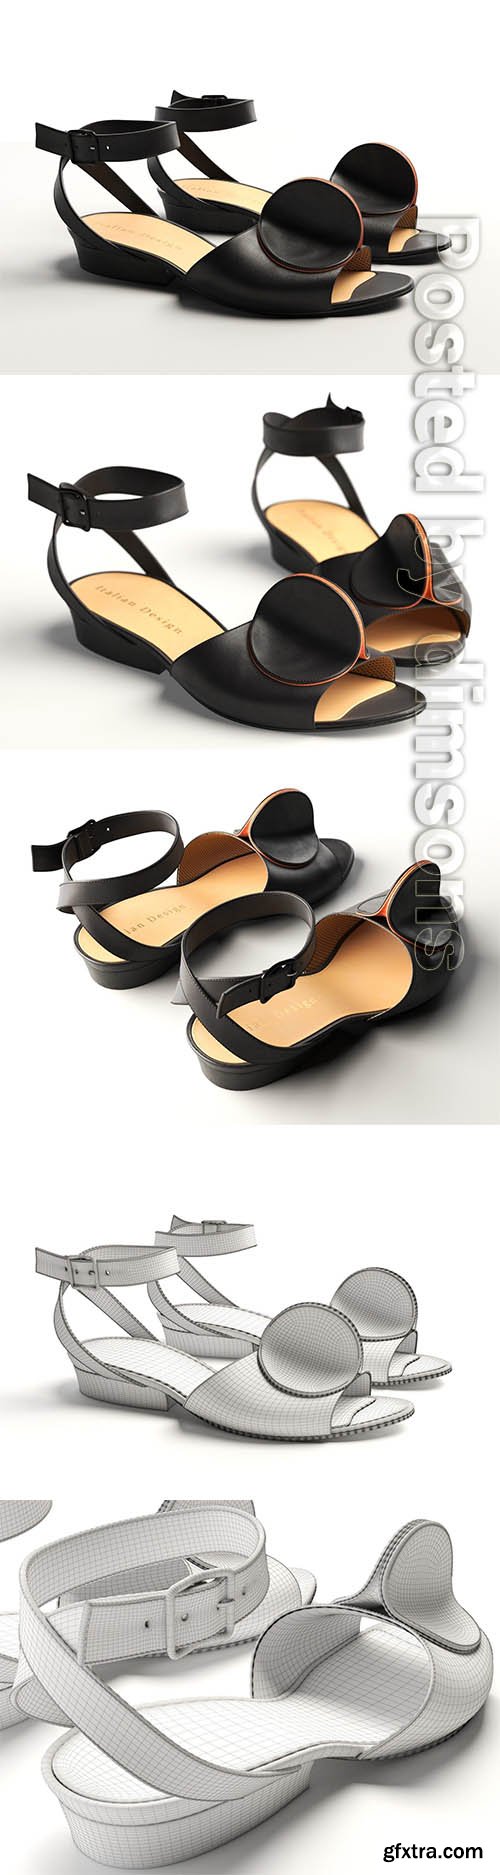 Cgtrader - Bijou Leather Strap Sandals 3D model